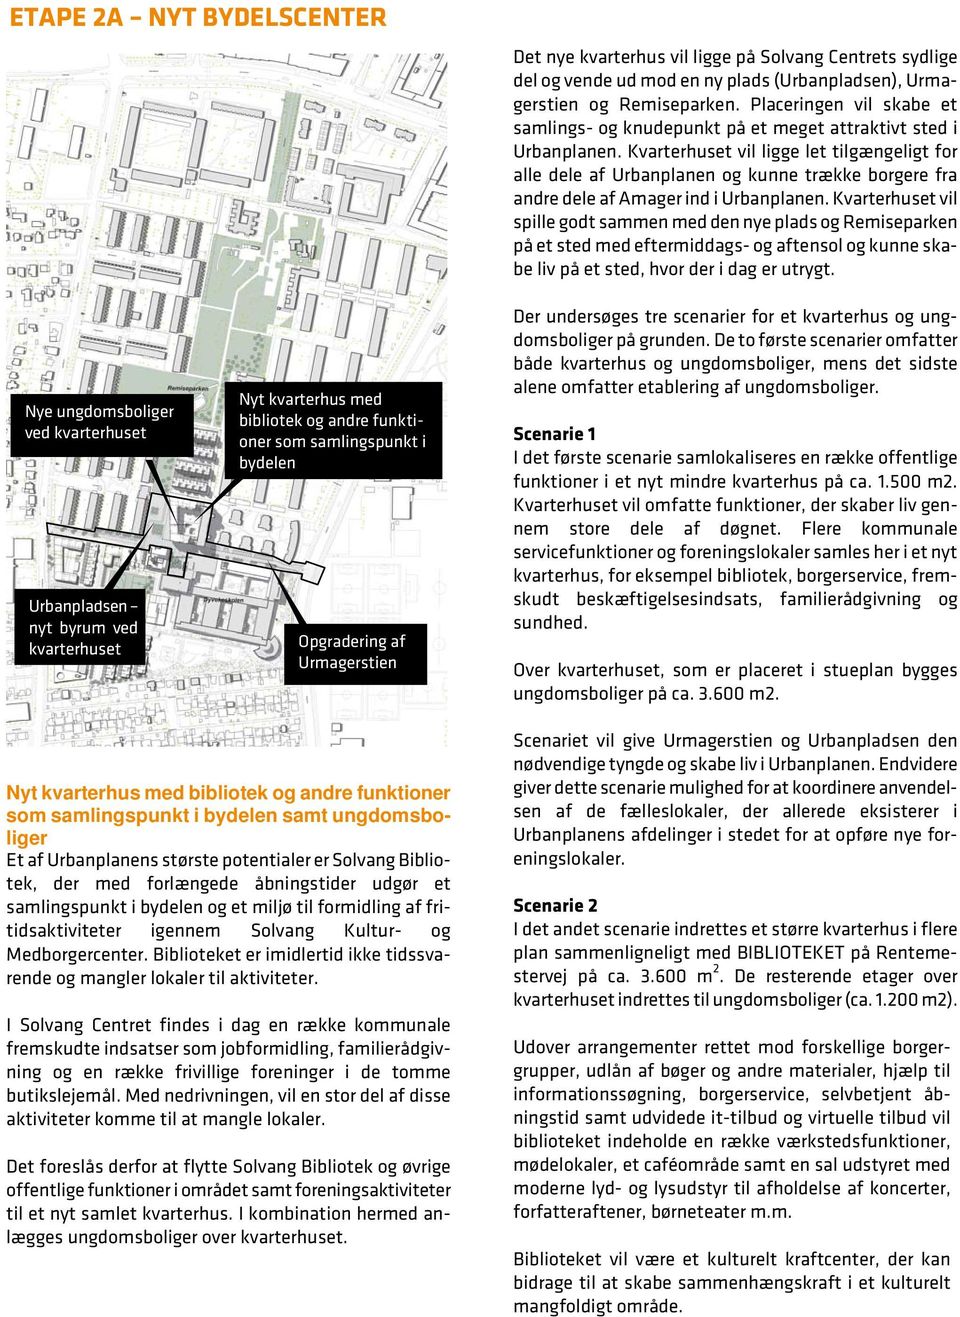 Kvarterhuset vil ligge let tilgængeligt for alle dele af Urbanplanen og kunne trække borgere fra andre dele af Amager ind i Urbanplanen.